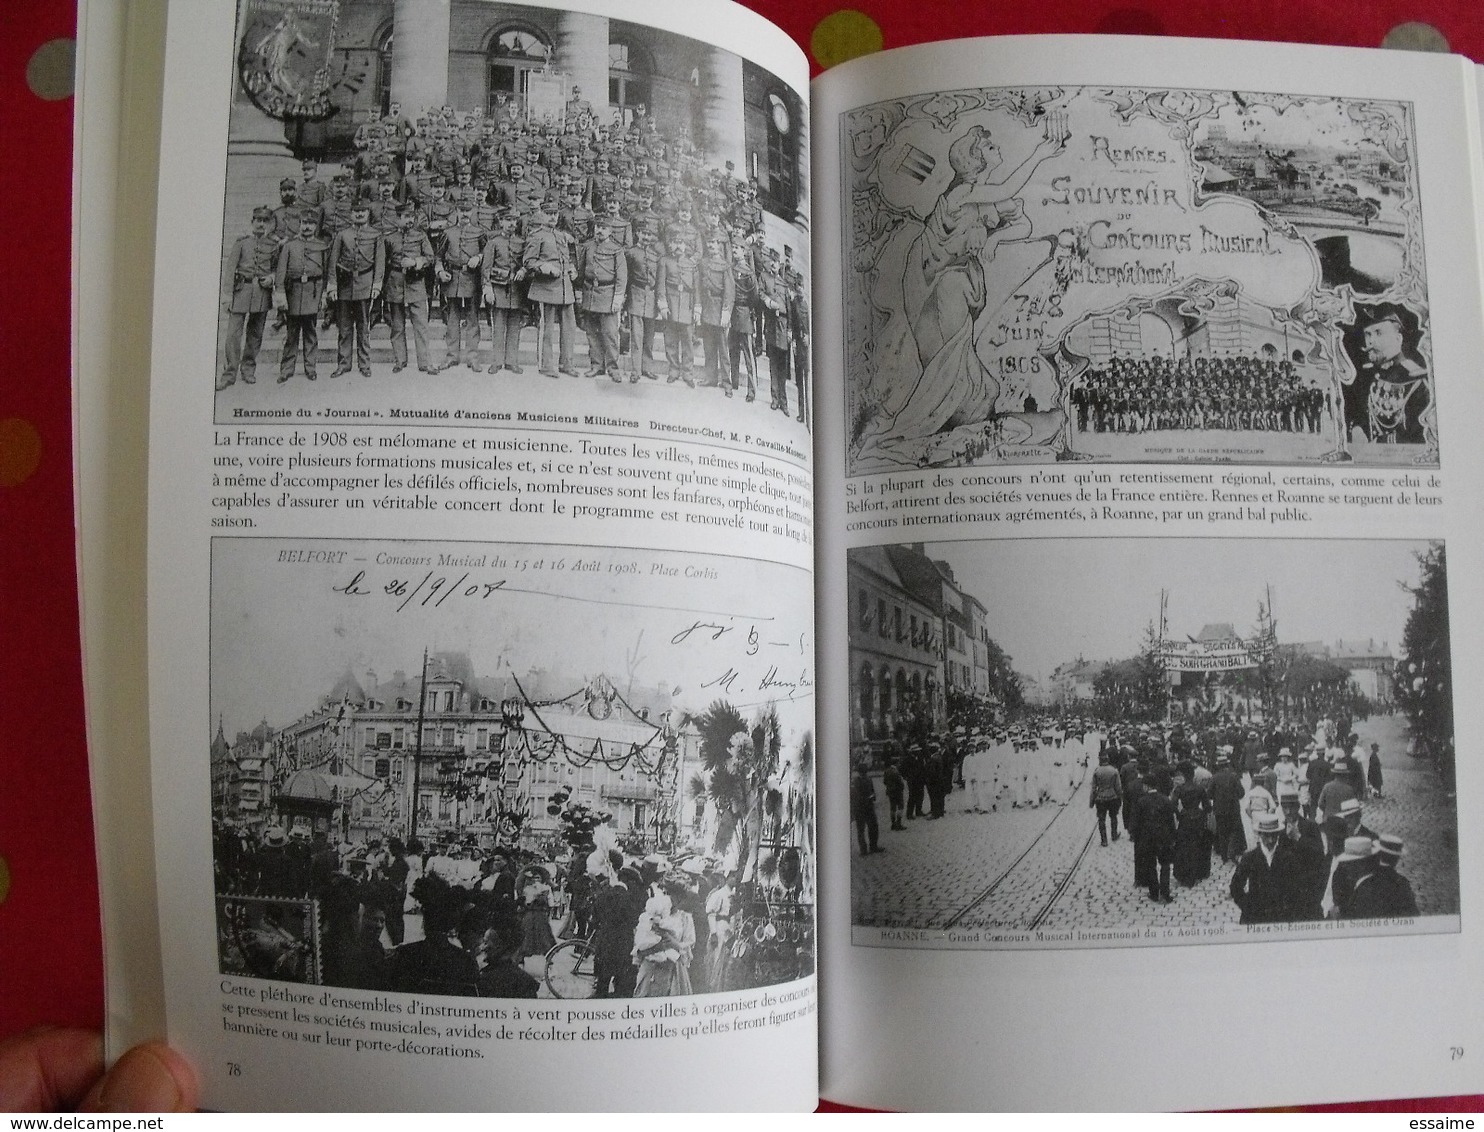 Il y a 100 ans... 1908. Guignard & Benard. Mémoire en images. éditions Alan Sutton. 2007. cartes postales photos